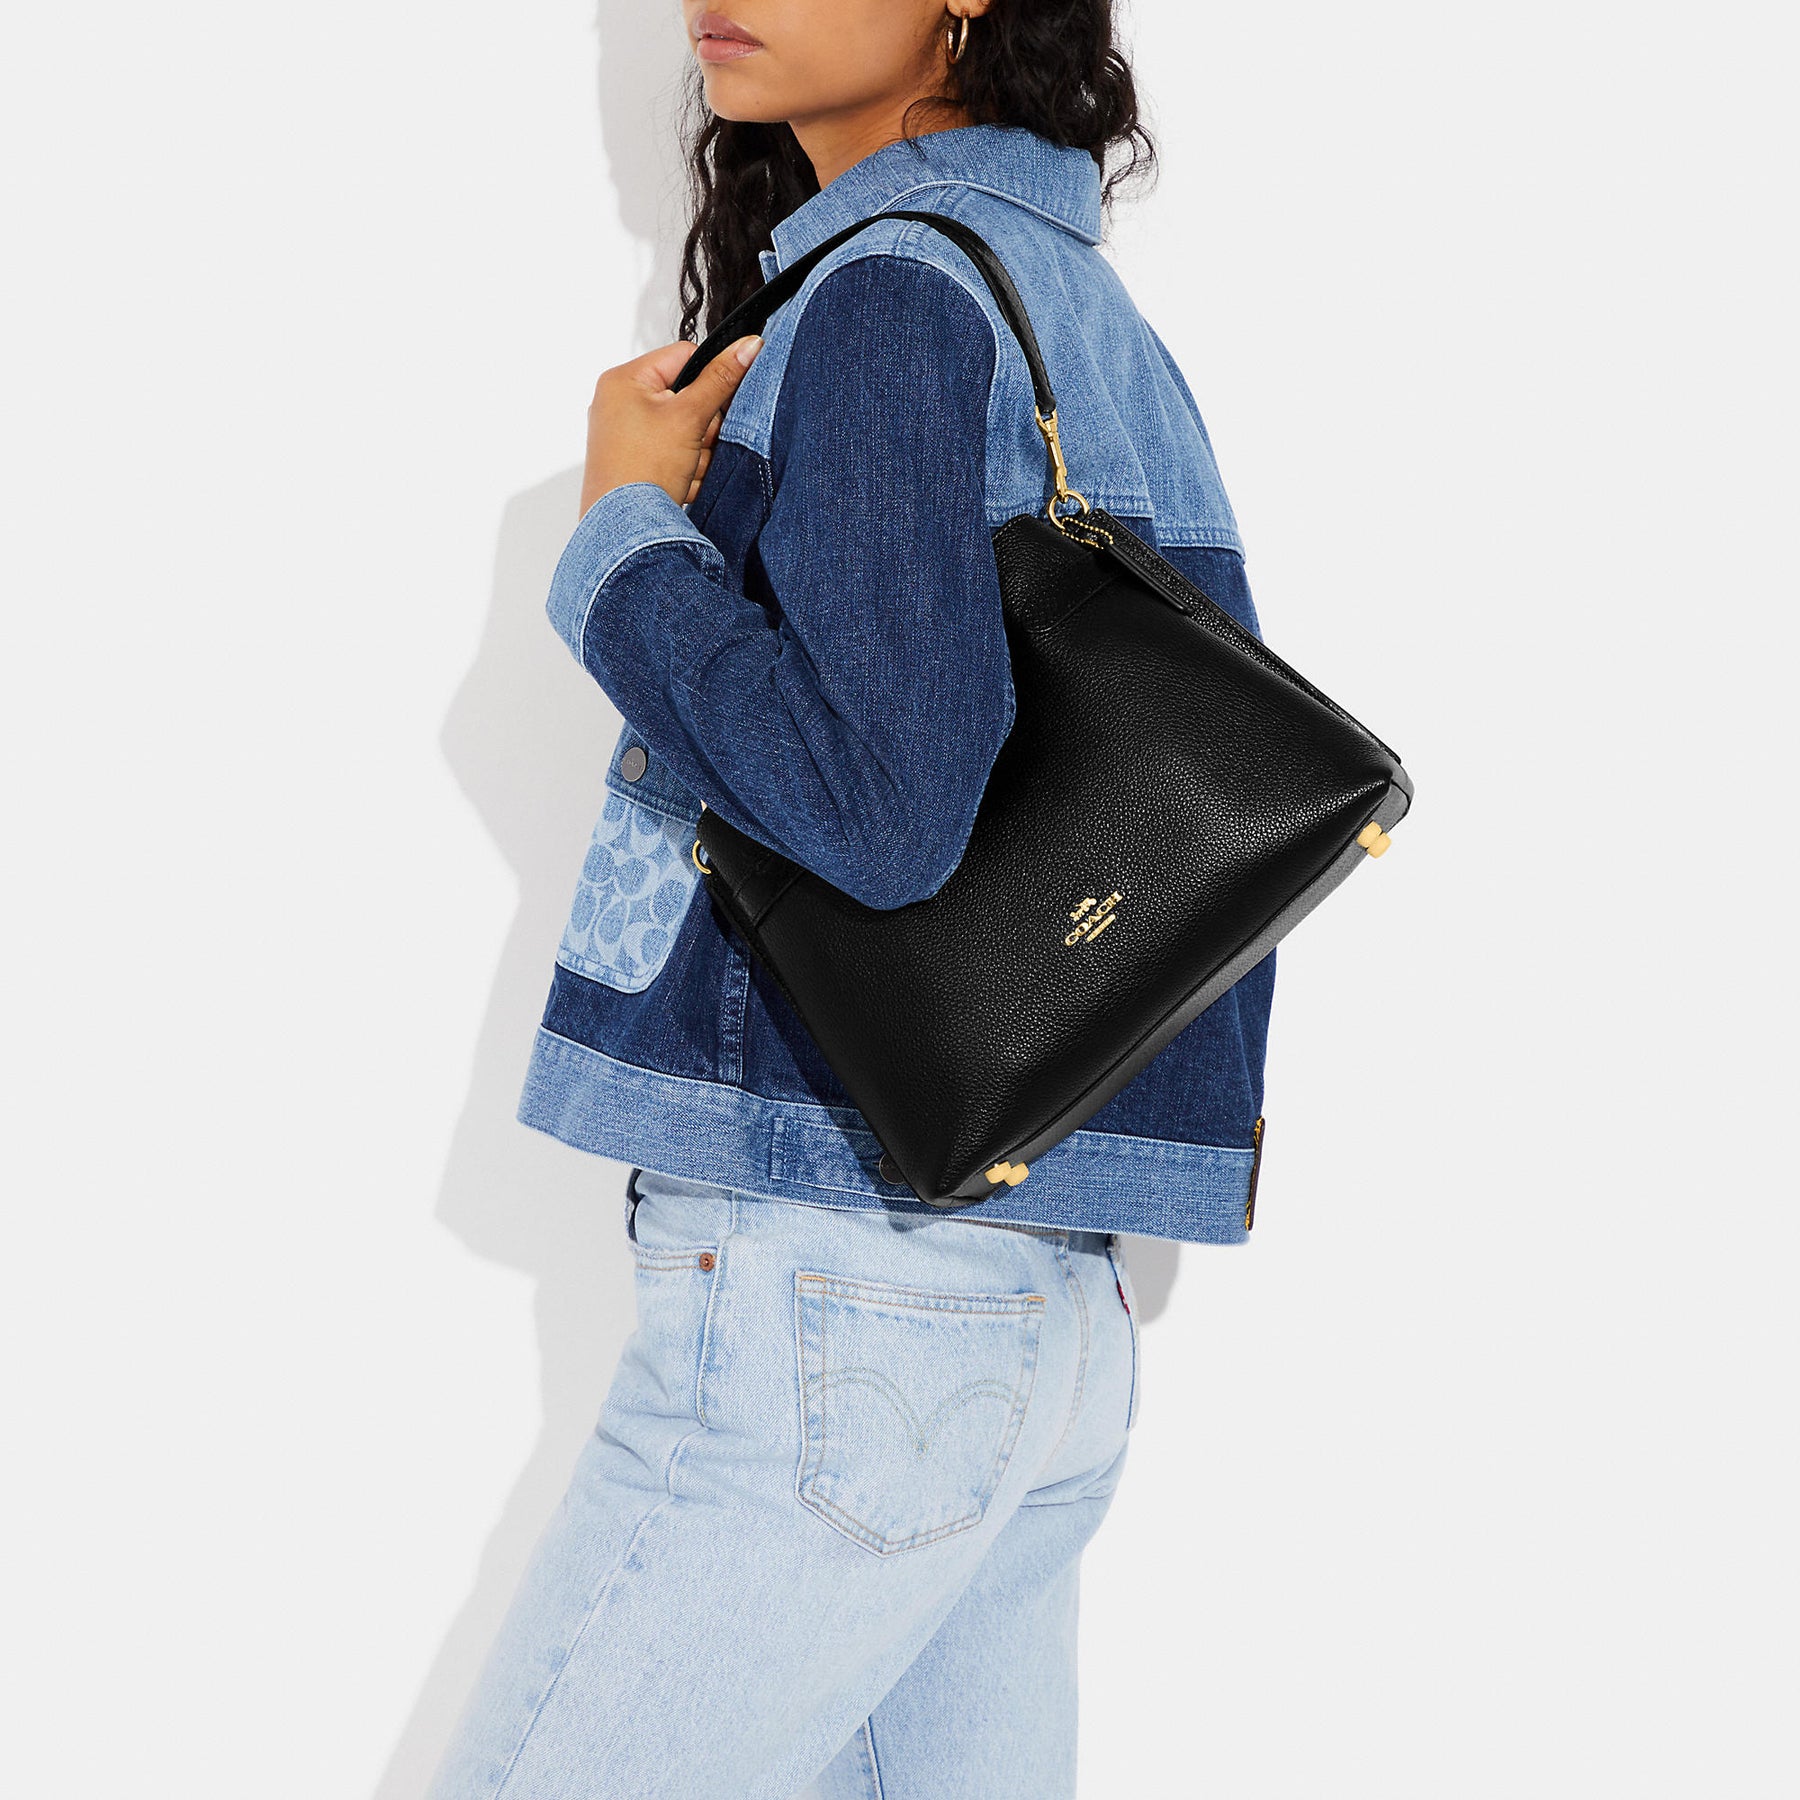 COACH Hanna Shoulder Bag in Black